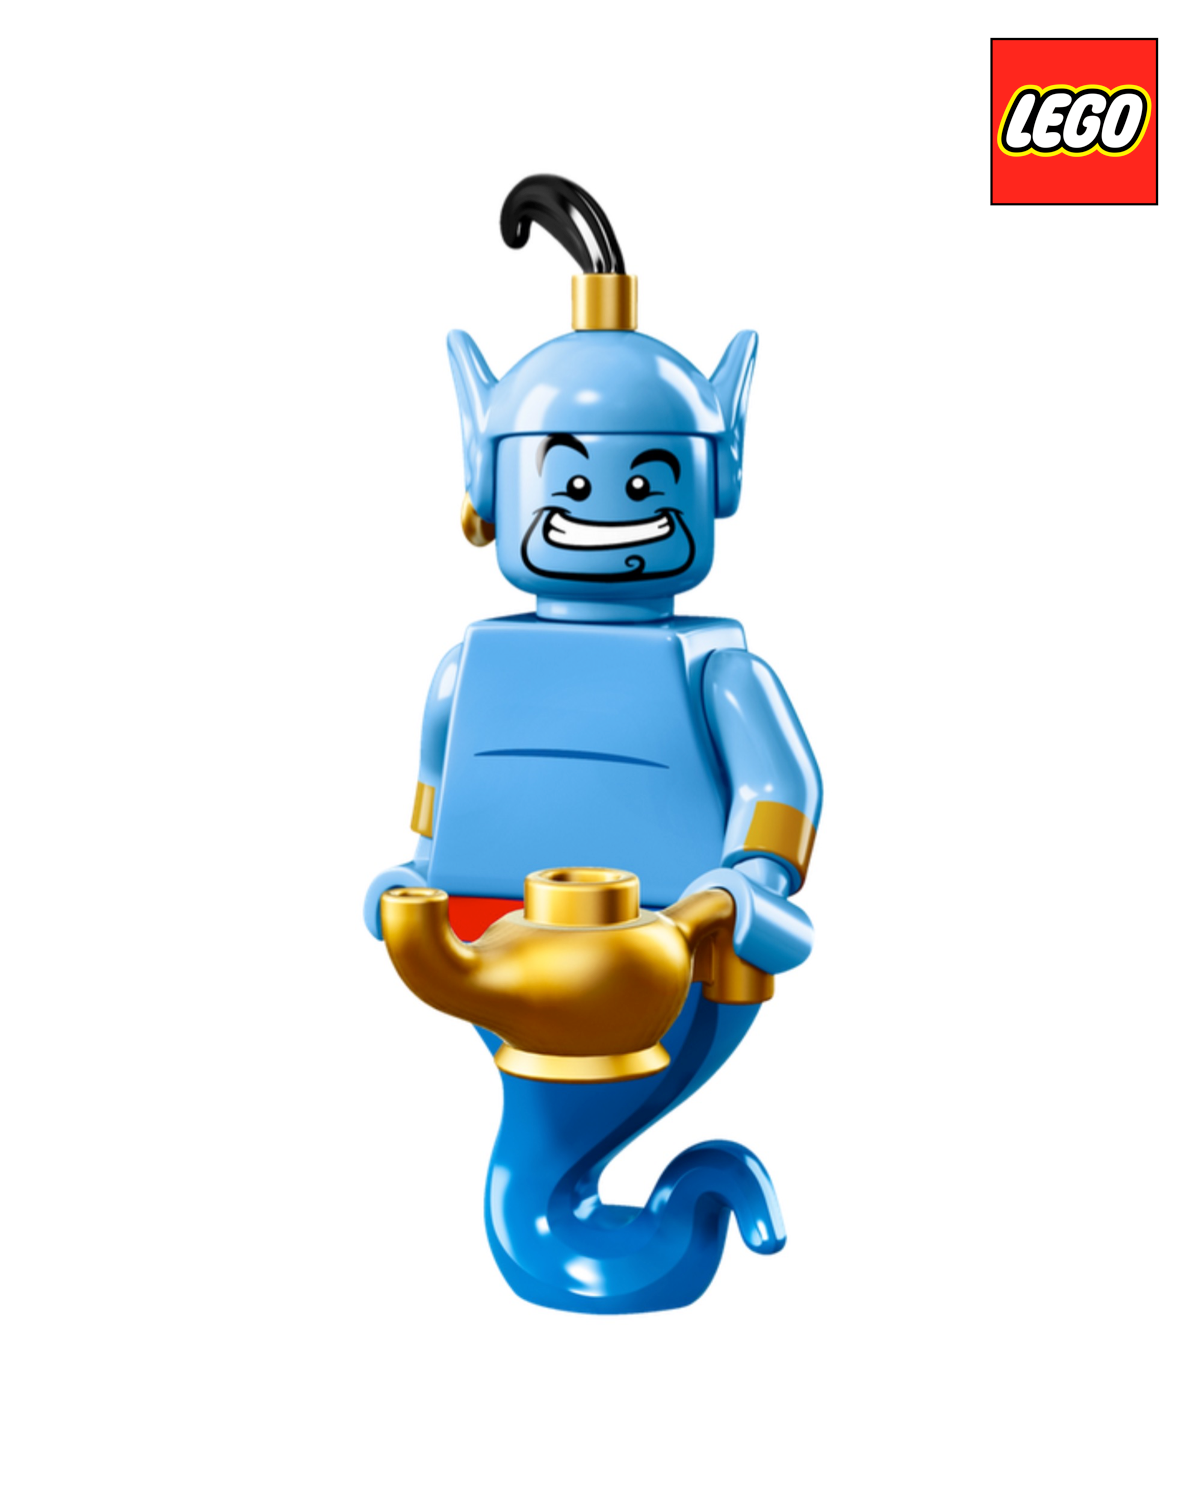 Genie - Disney - Series 1  | LEGO Minifigure | NEW CMF